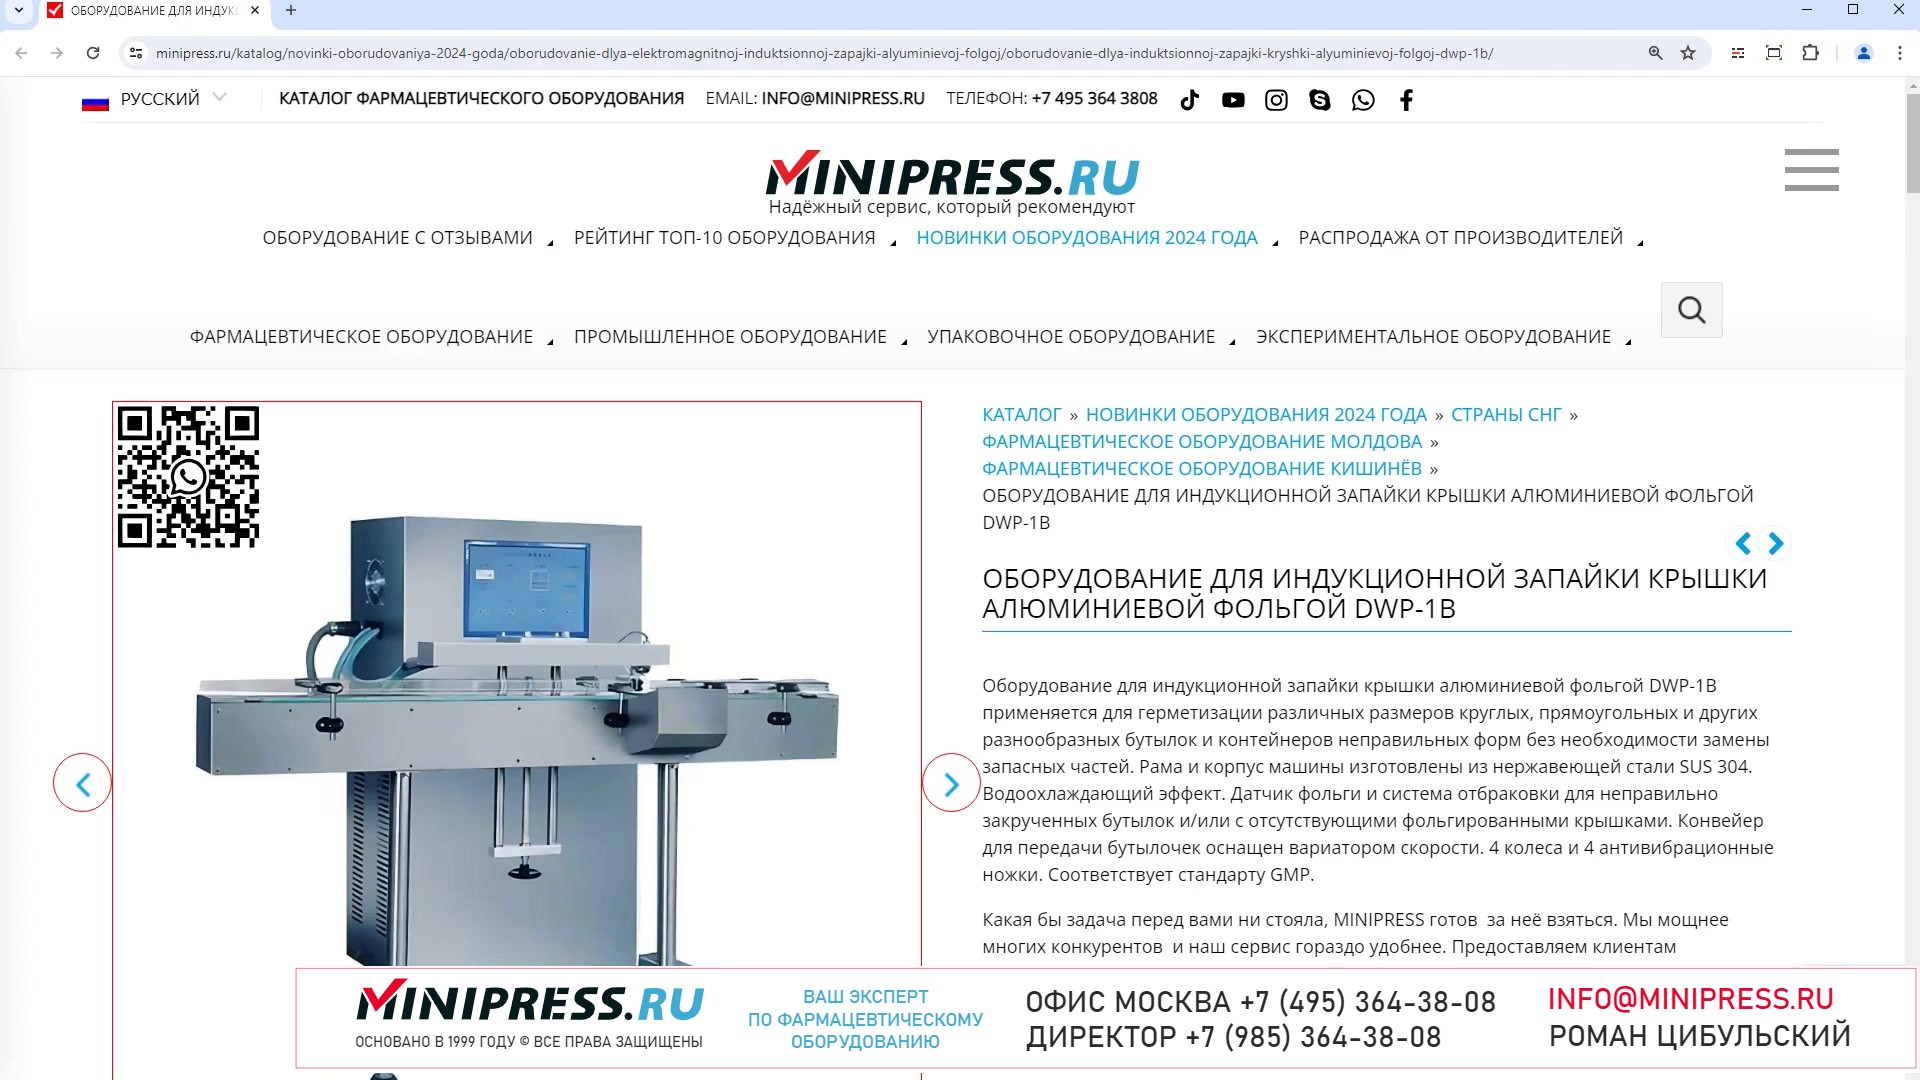 Minipress.ru Оборудование для индукционной запайки крышки алюминиевой фольгой DWP-1B